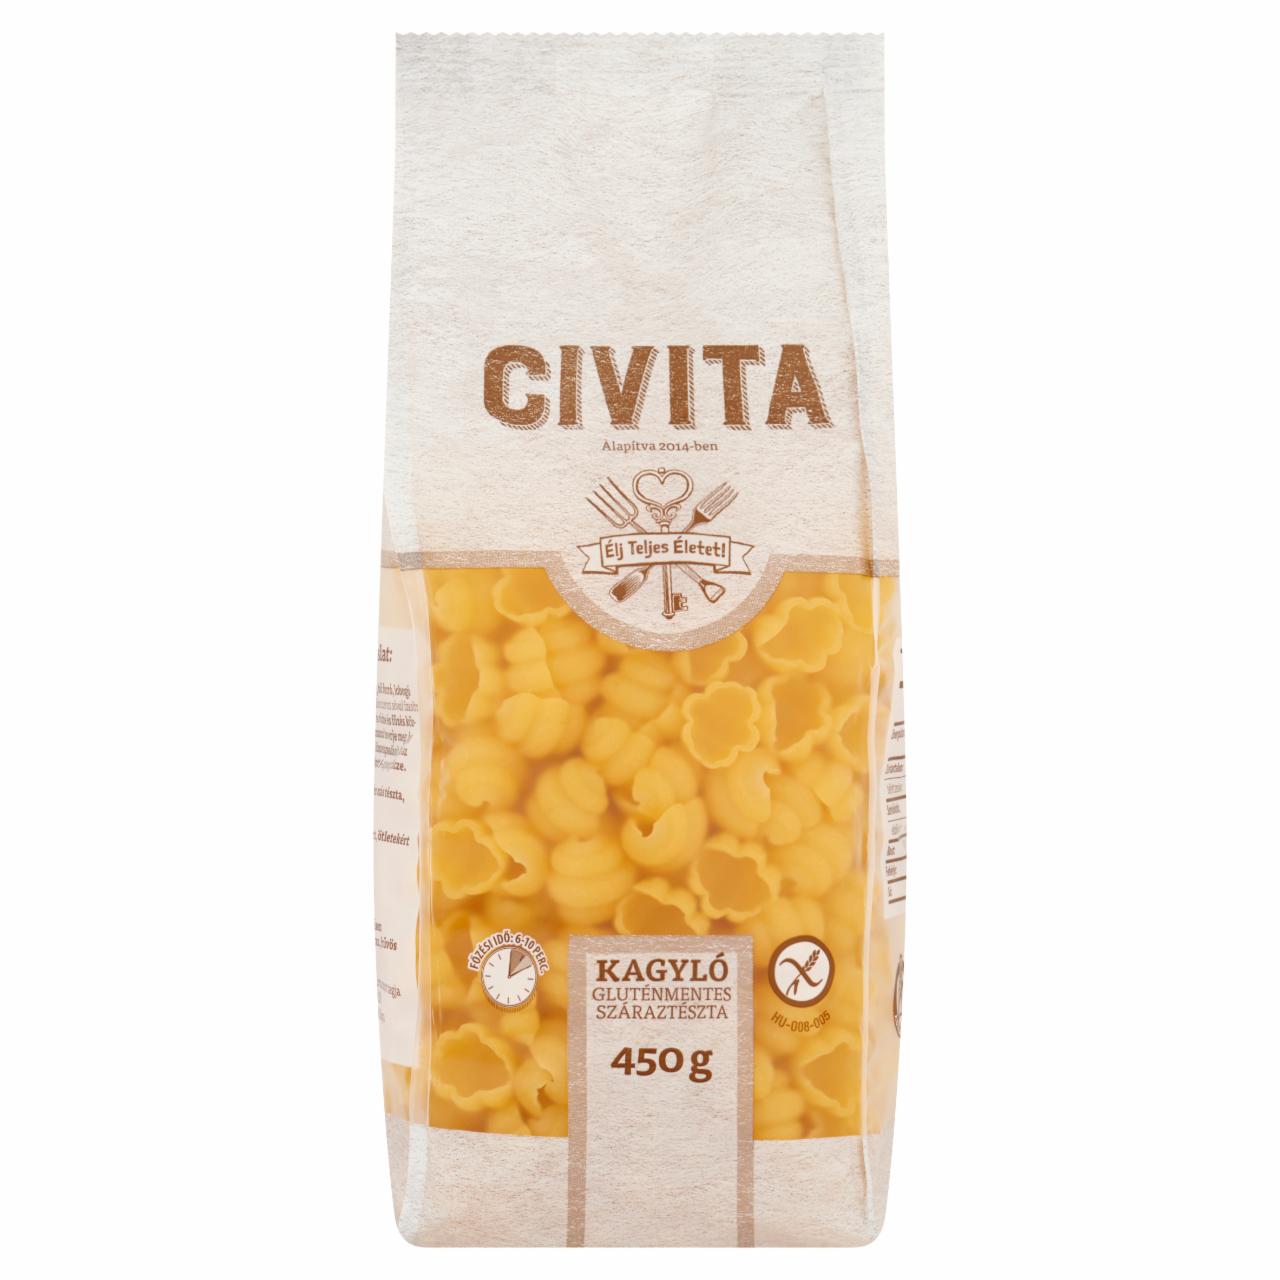 Képek - Civita kagyló gluténmentes száraztészta 450 g